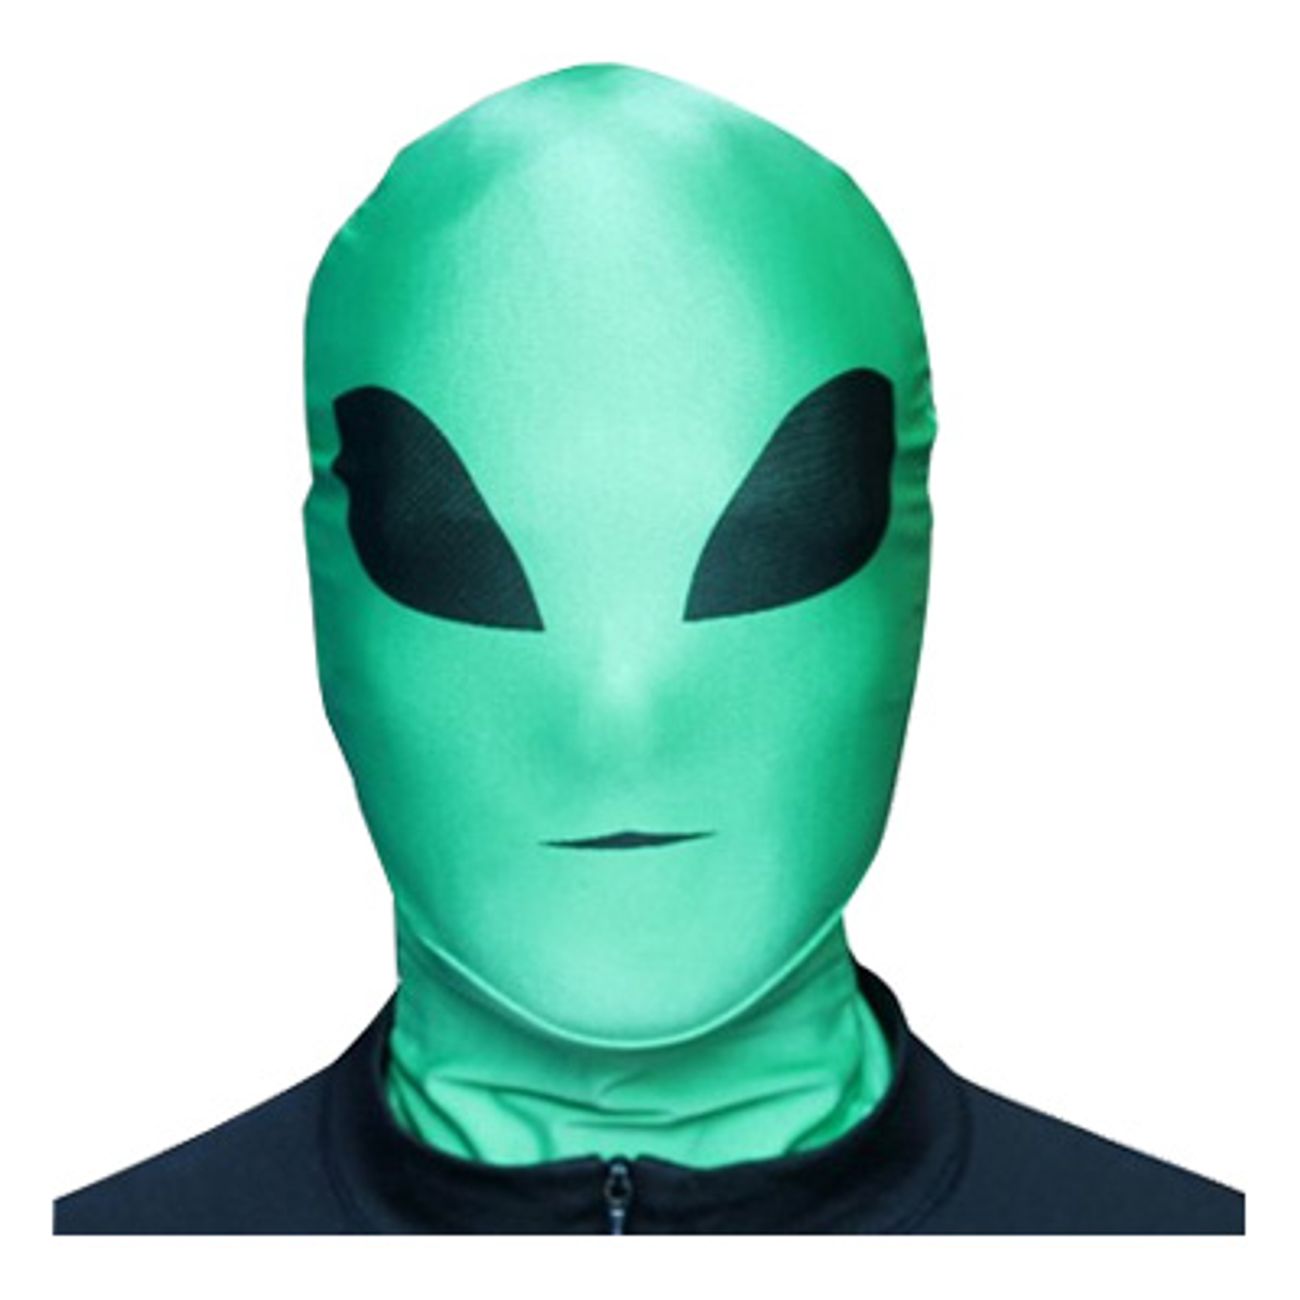 morphmask-alien-1